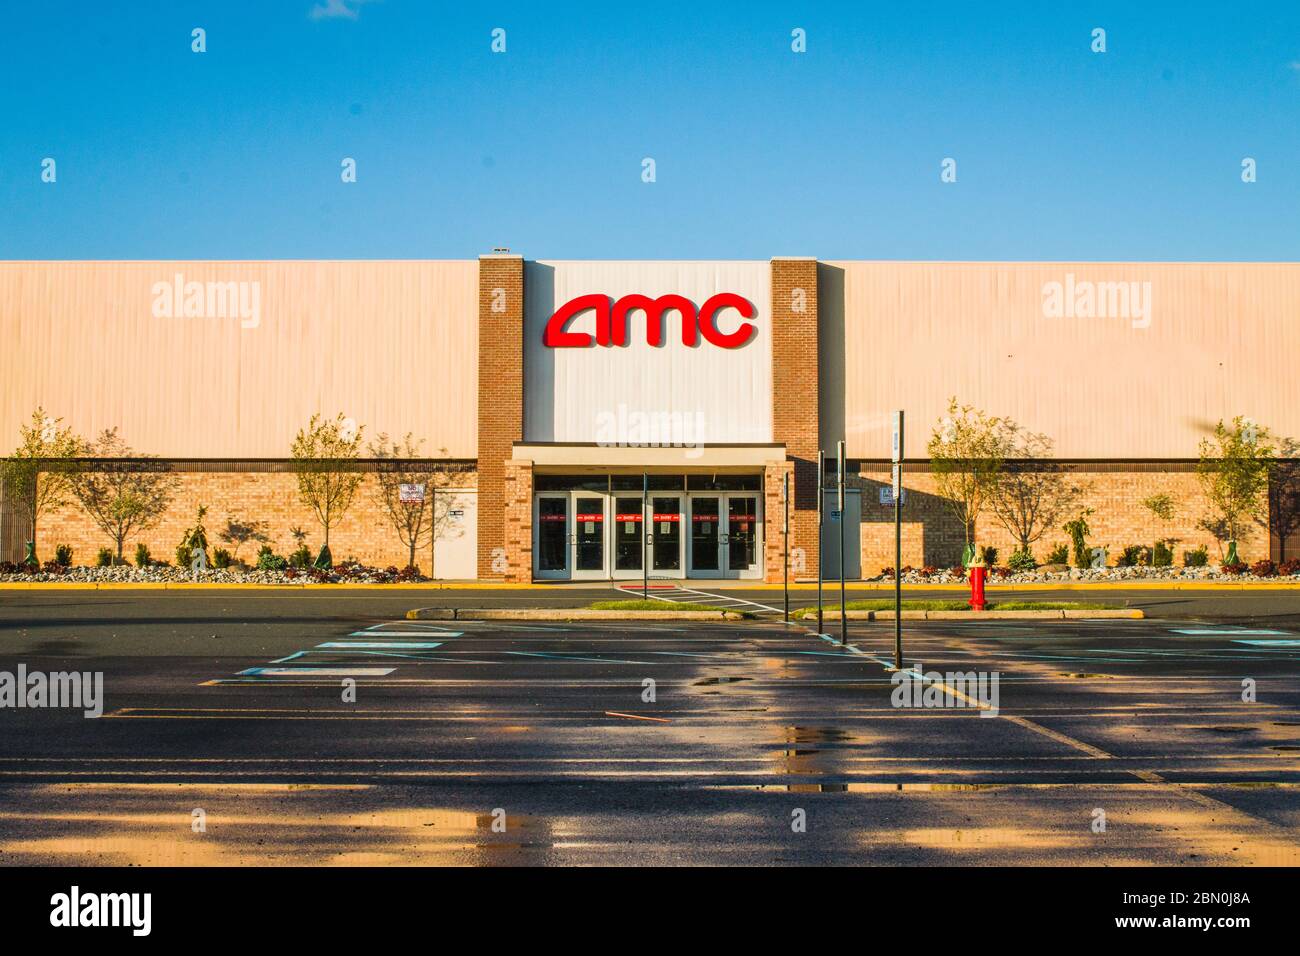 Covid-19 di 2020 costringe i cinema a chiudere. Immagine di un parcheggio vuoto di fronte a un cinema AMC in New Jersey. Foto Stock